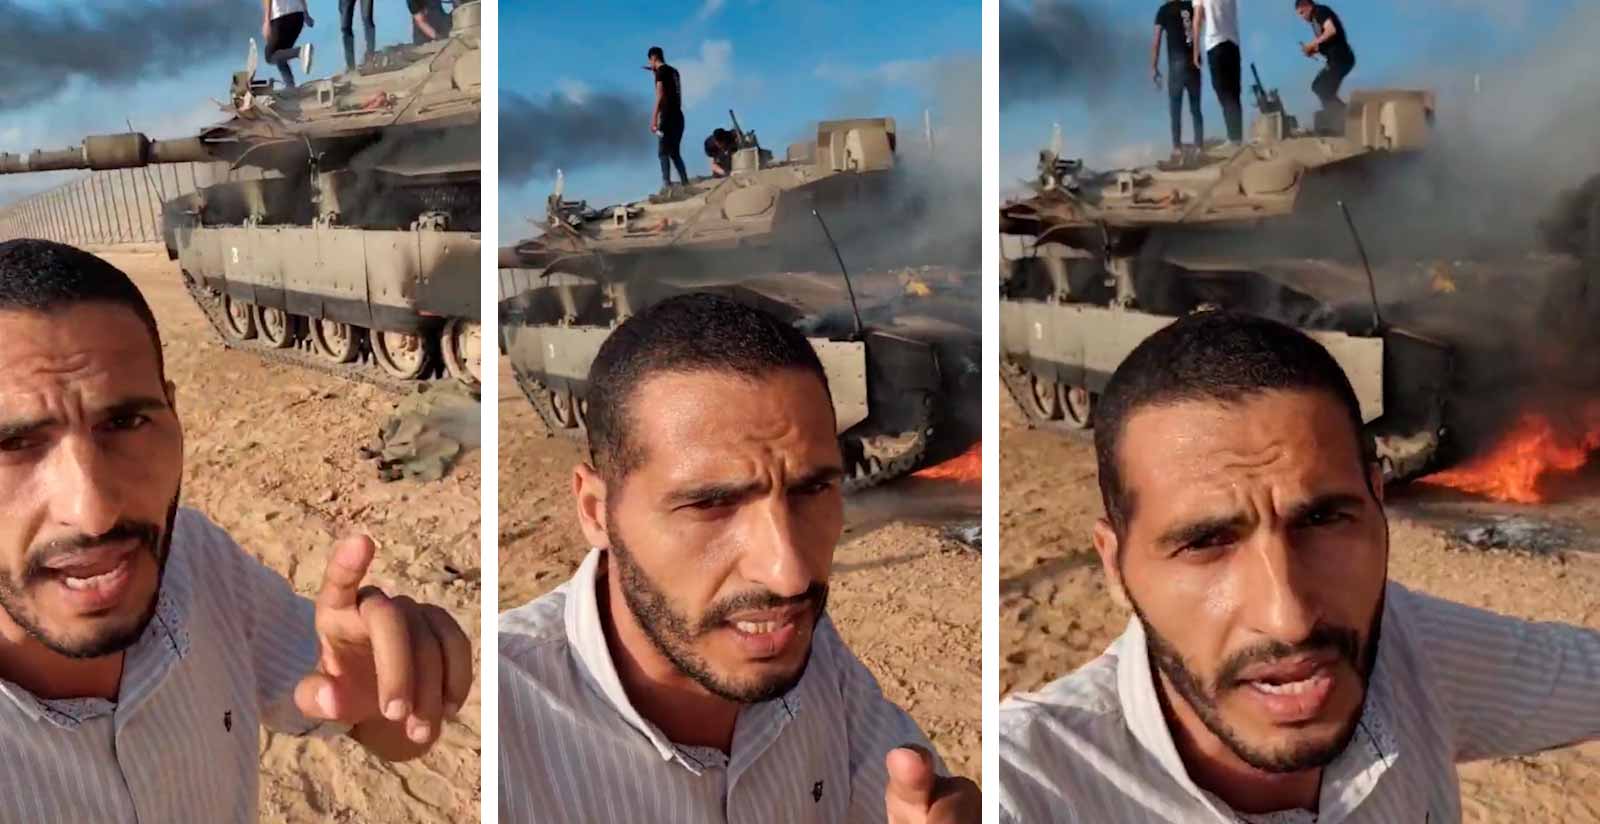 Video toont Israëlische tank Merkava in vlammen, nadat hij is vernietigd door Palestijnen. Foto en video: Telegram t.me/SputnikBrasil